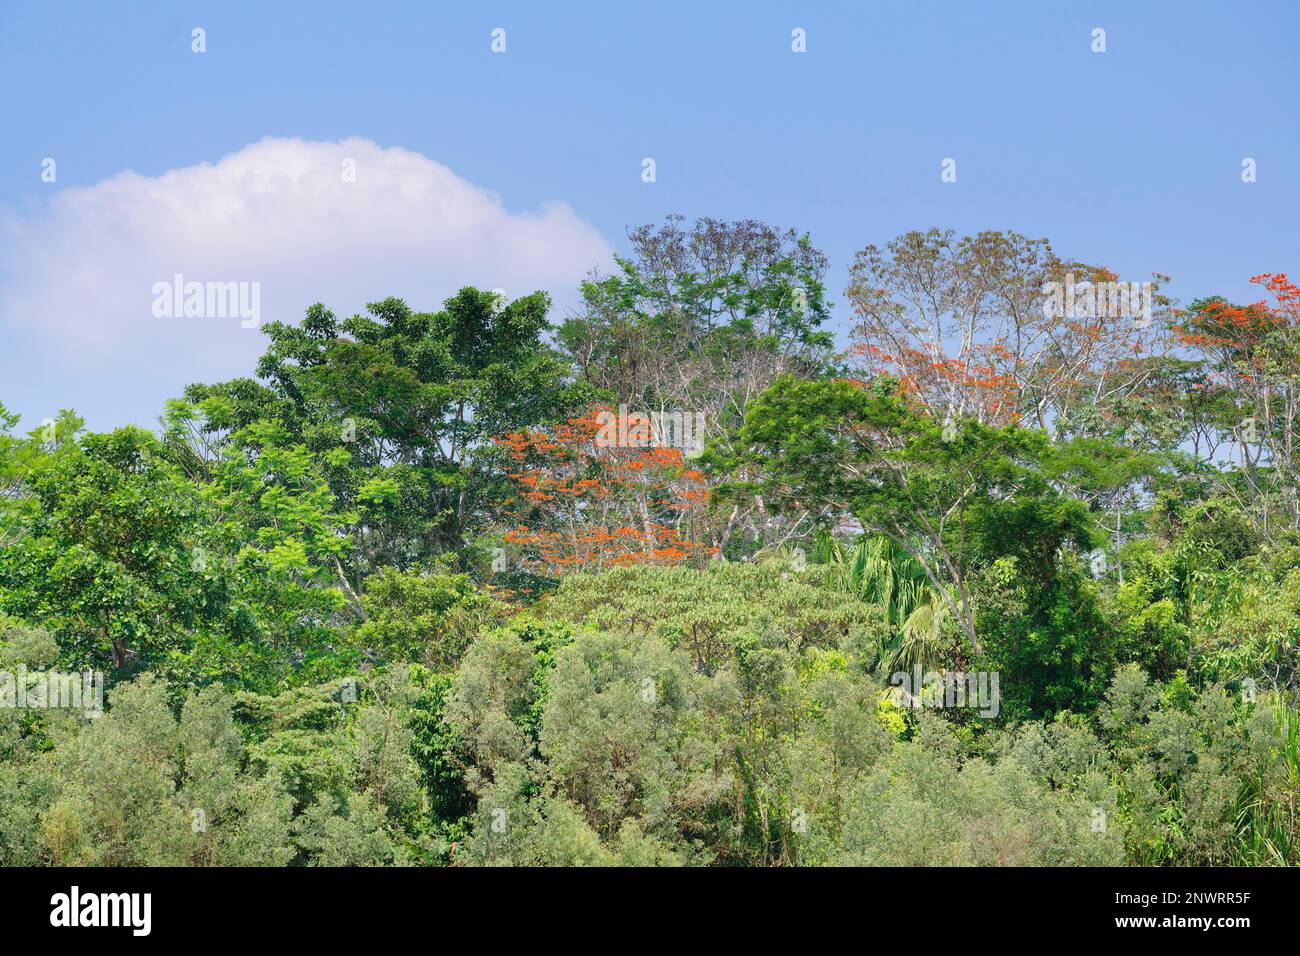 Foresta pluviale tropicale amazzonica con albero di Ipe Rosa (Tabebuia ipe), Fiume Madre de Dios, Parco Nazionale Manu, Amazzonia Peruviana, Perù Foto Stock